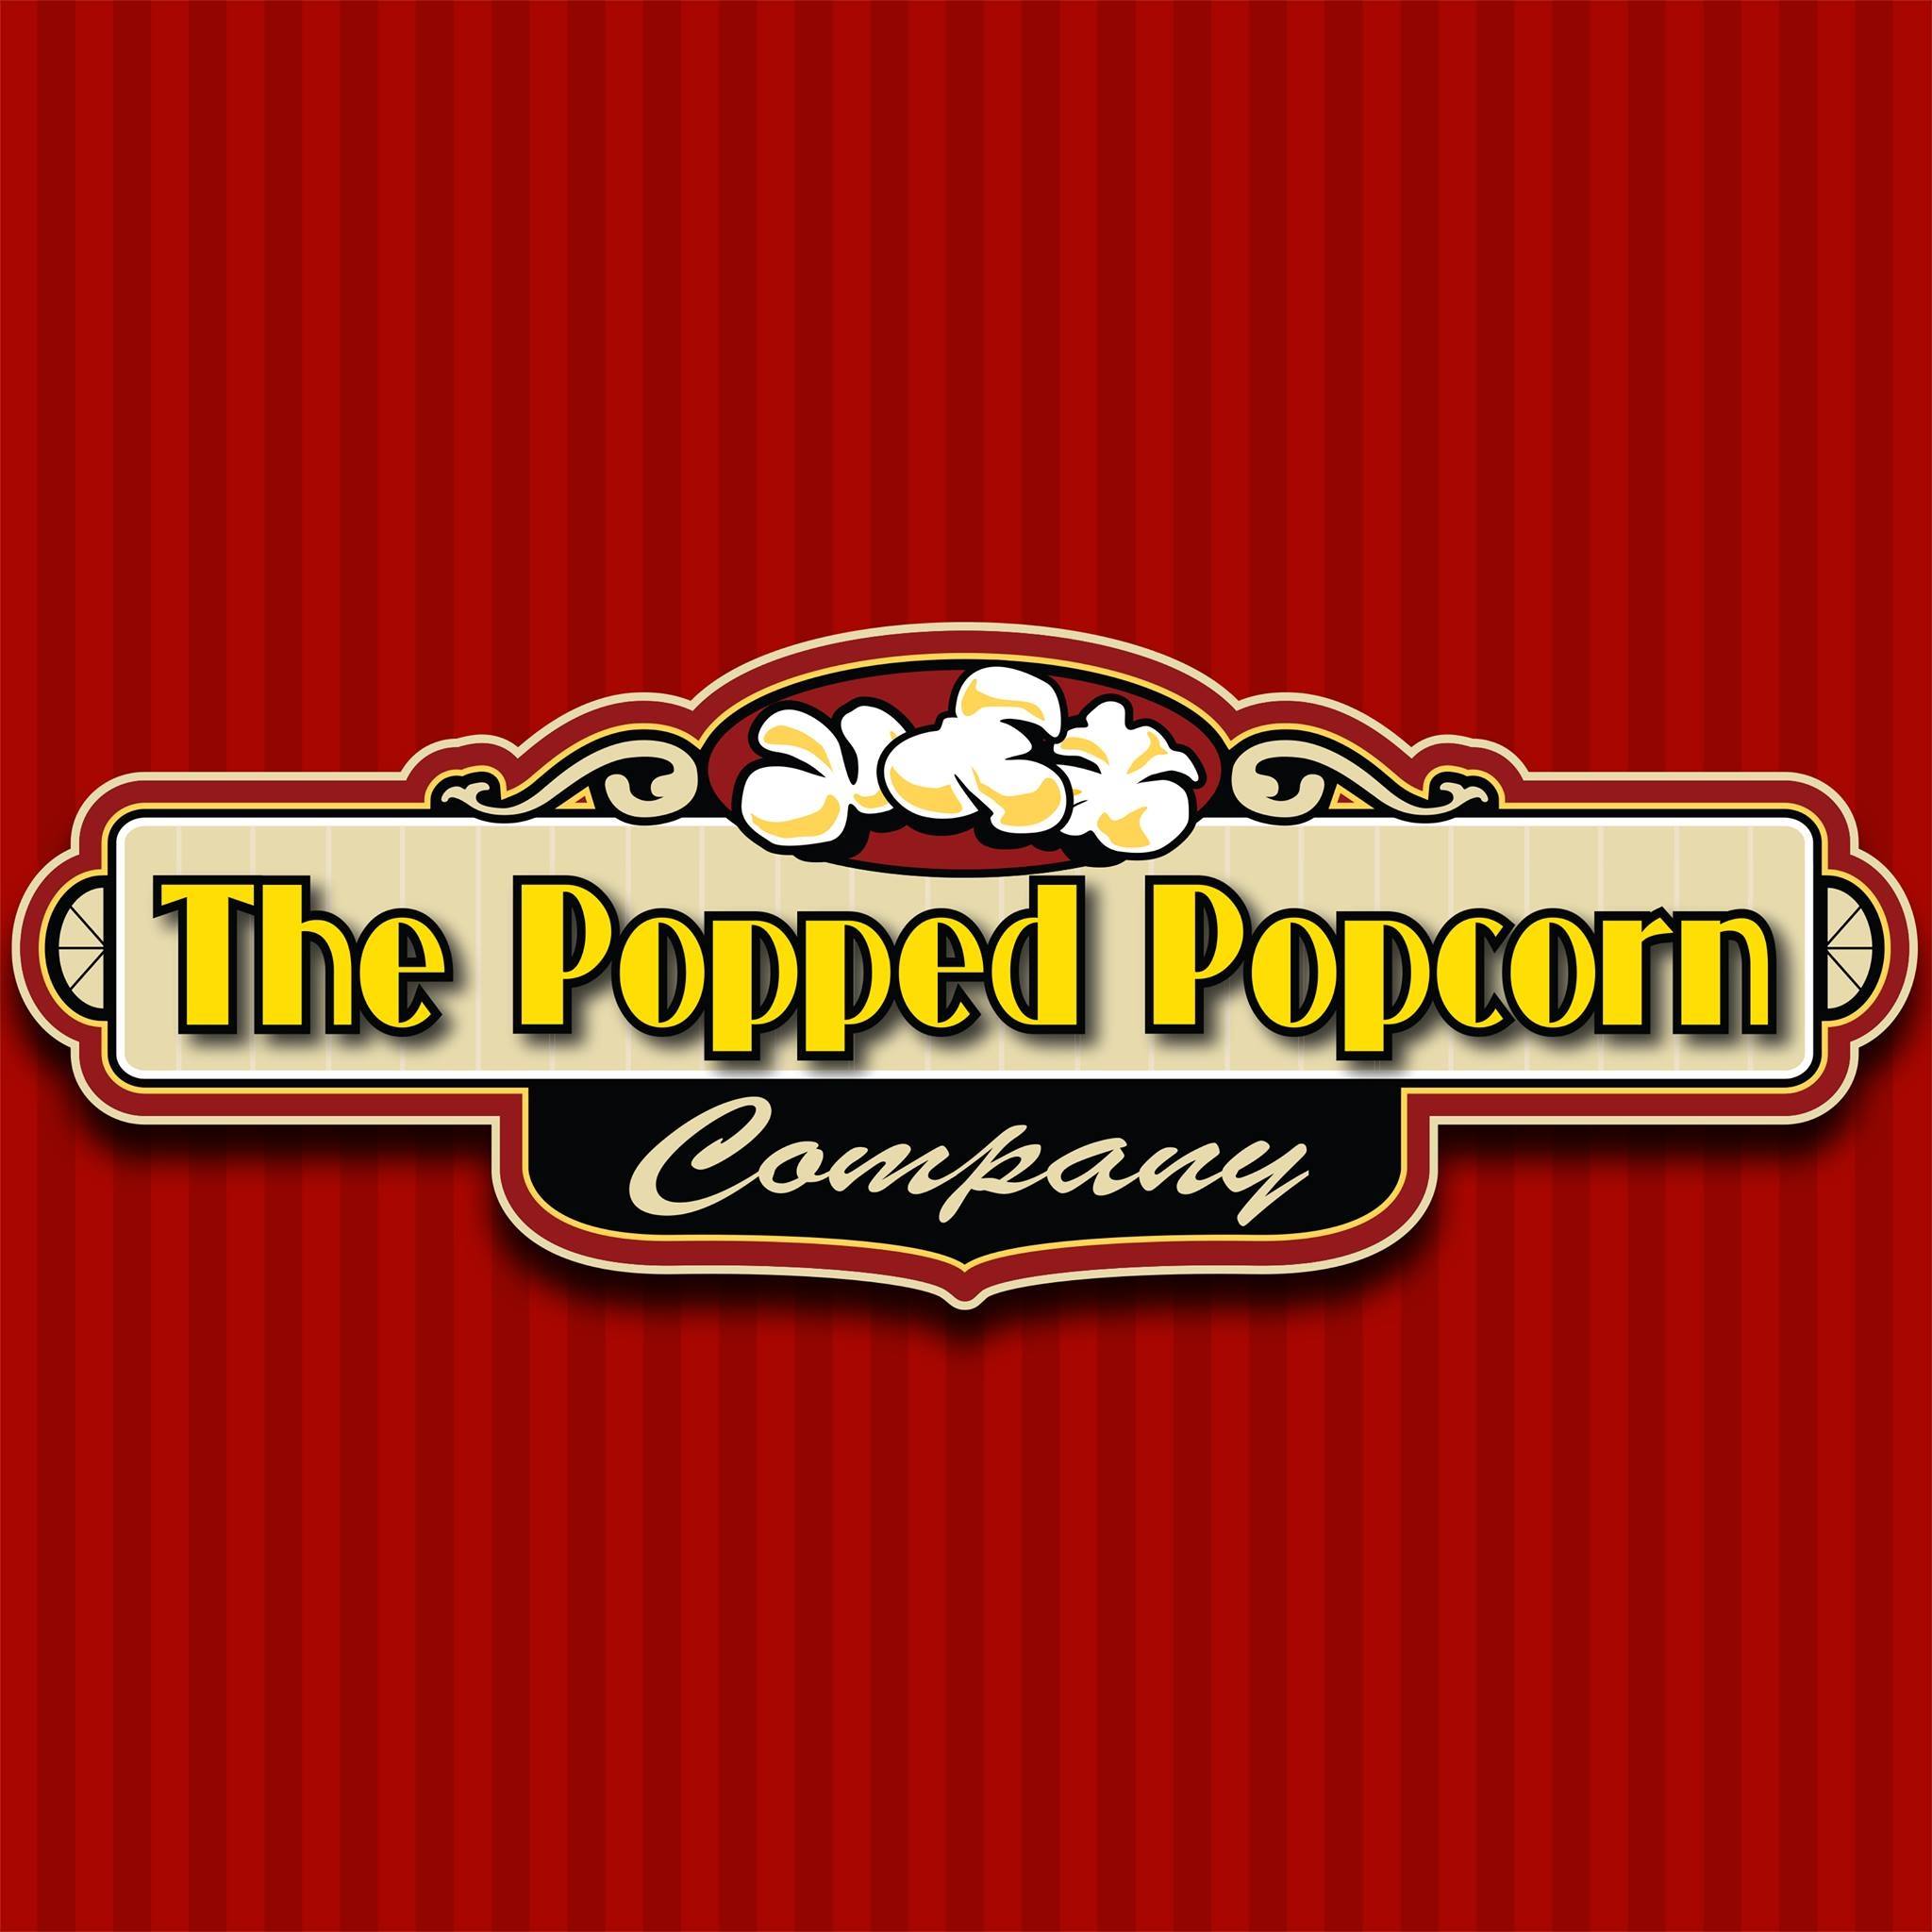 The Popped Popcorn Company 